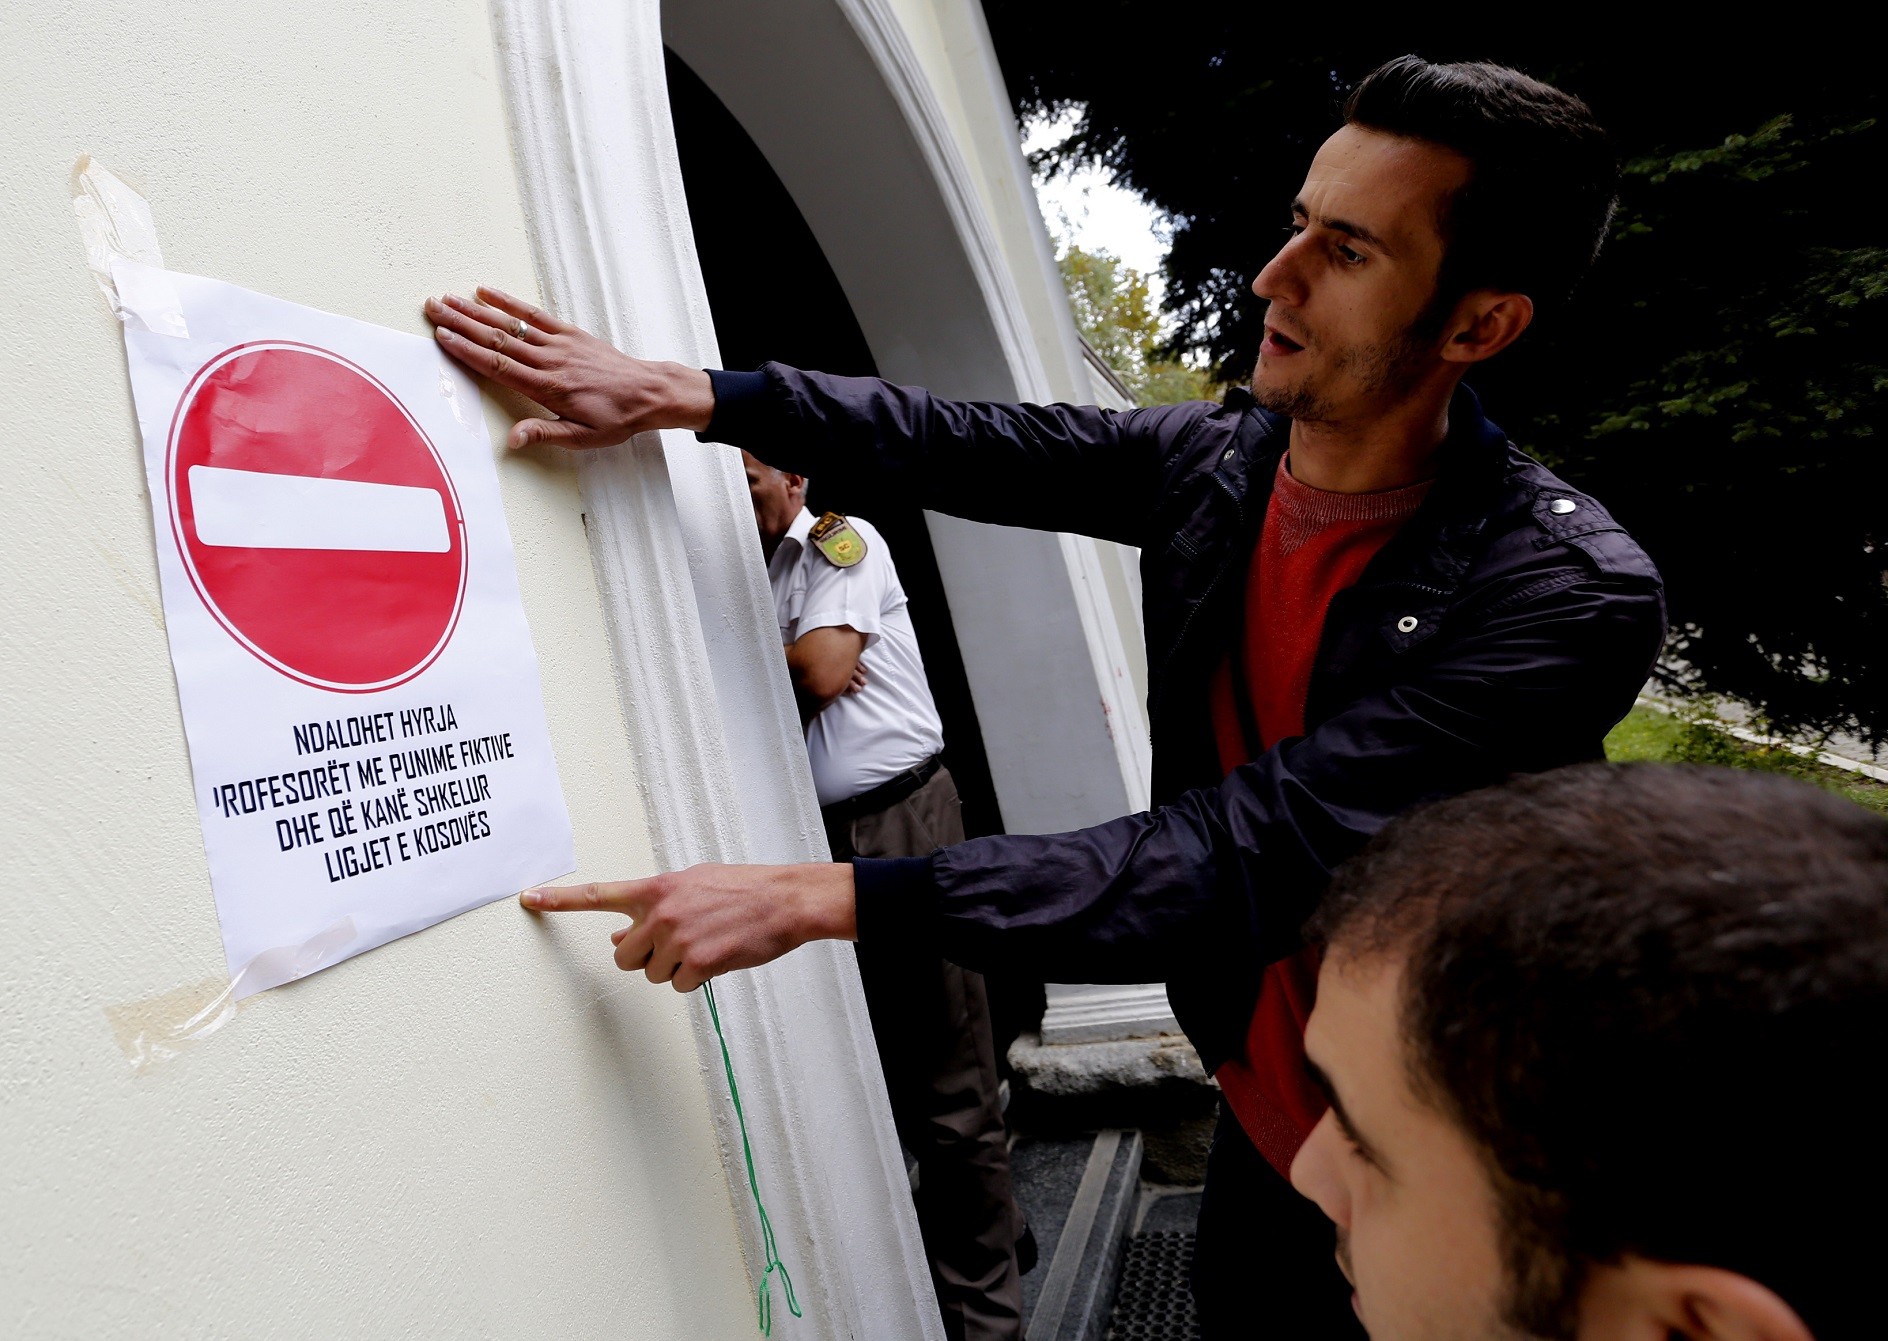 Këshilli i Etikës i Universitetit të Prishtinës demotivon denoncimin e shkeljeve etike